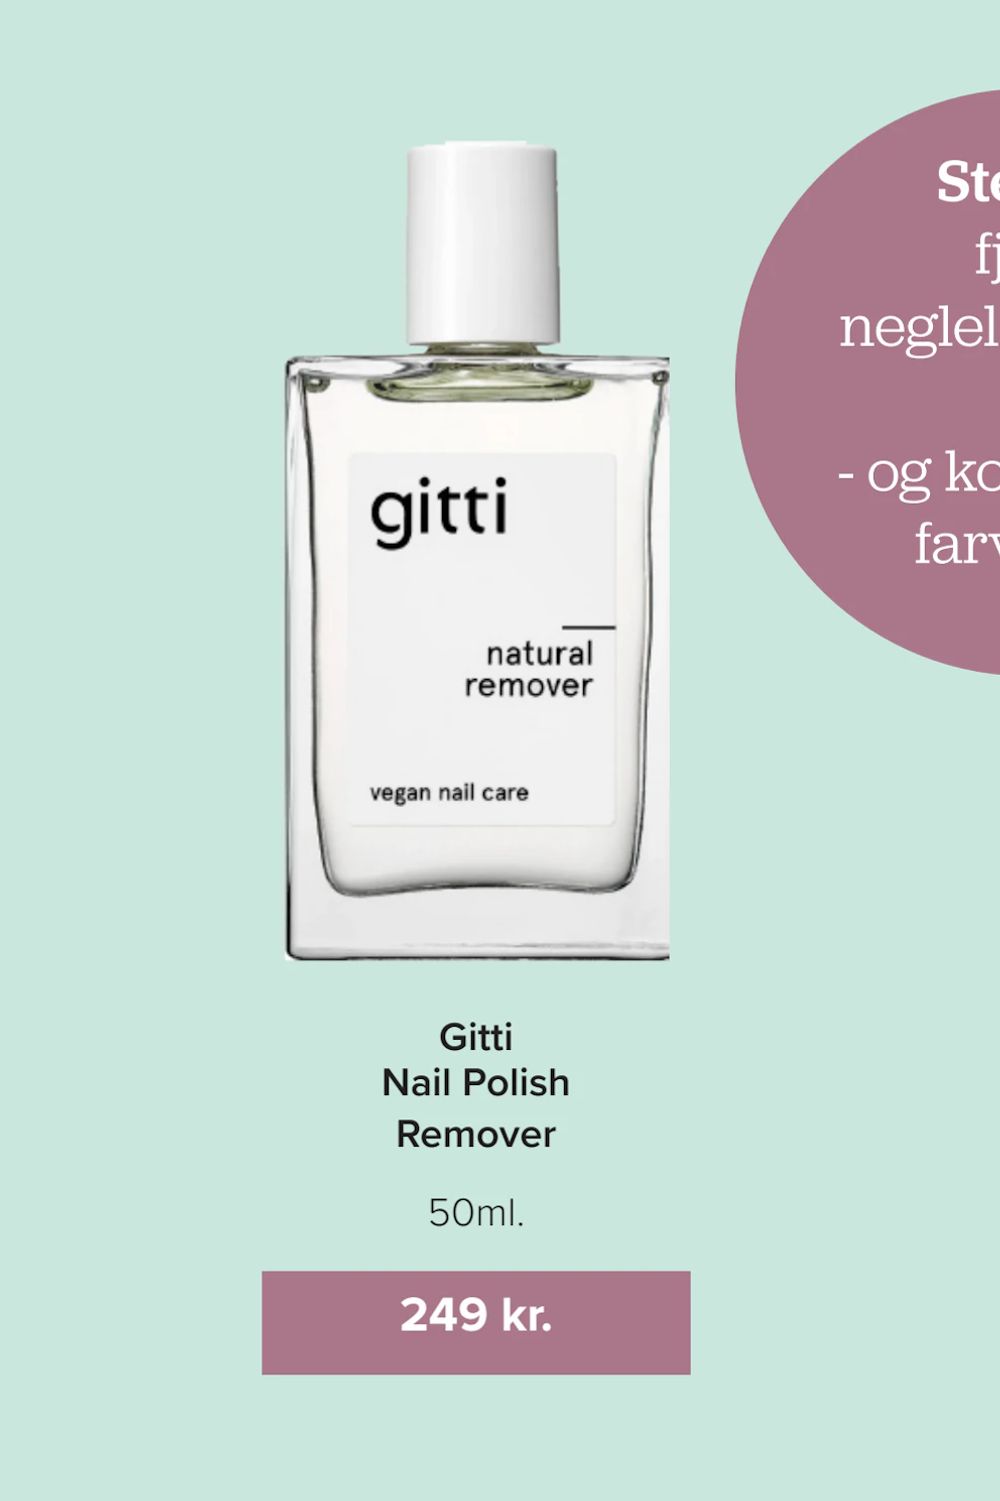 Tilbud på Gitti Nail Polish Remover fra Helsemin til 249 kr.